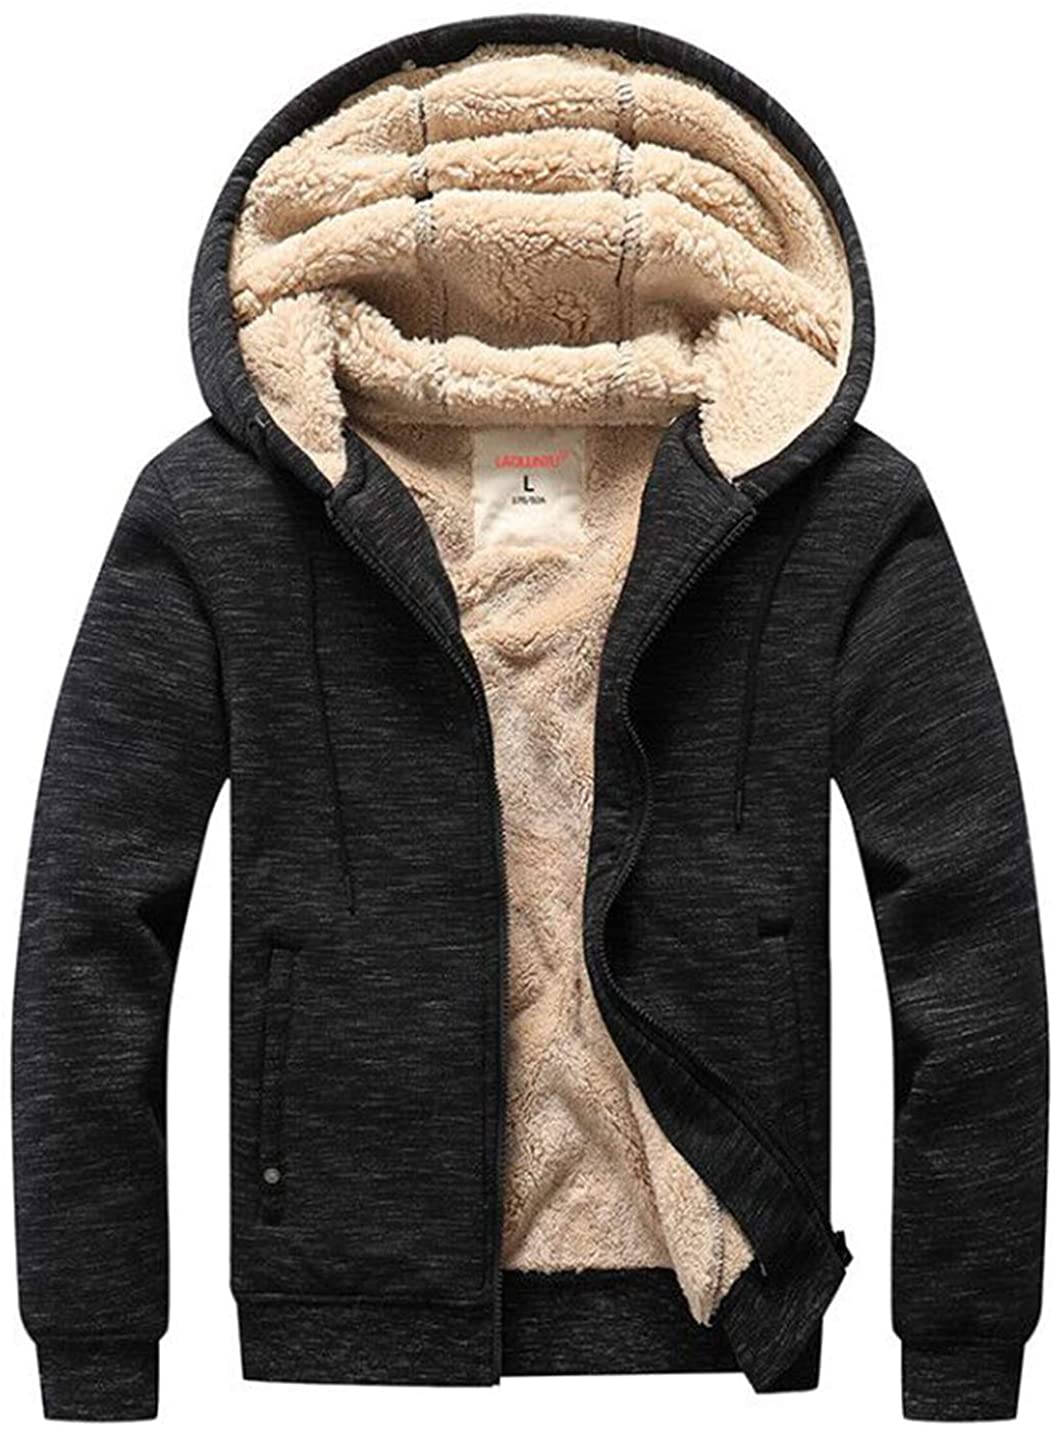 Flygo Hoodies for Men Zip Up Winter Fleece Sherpa Lined Sweatshirt